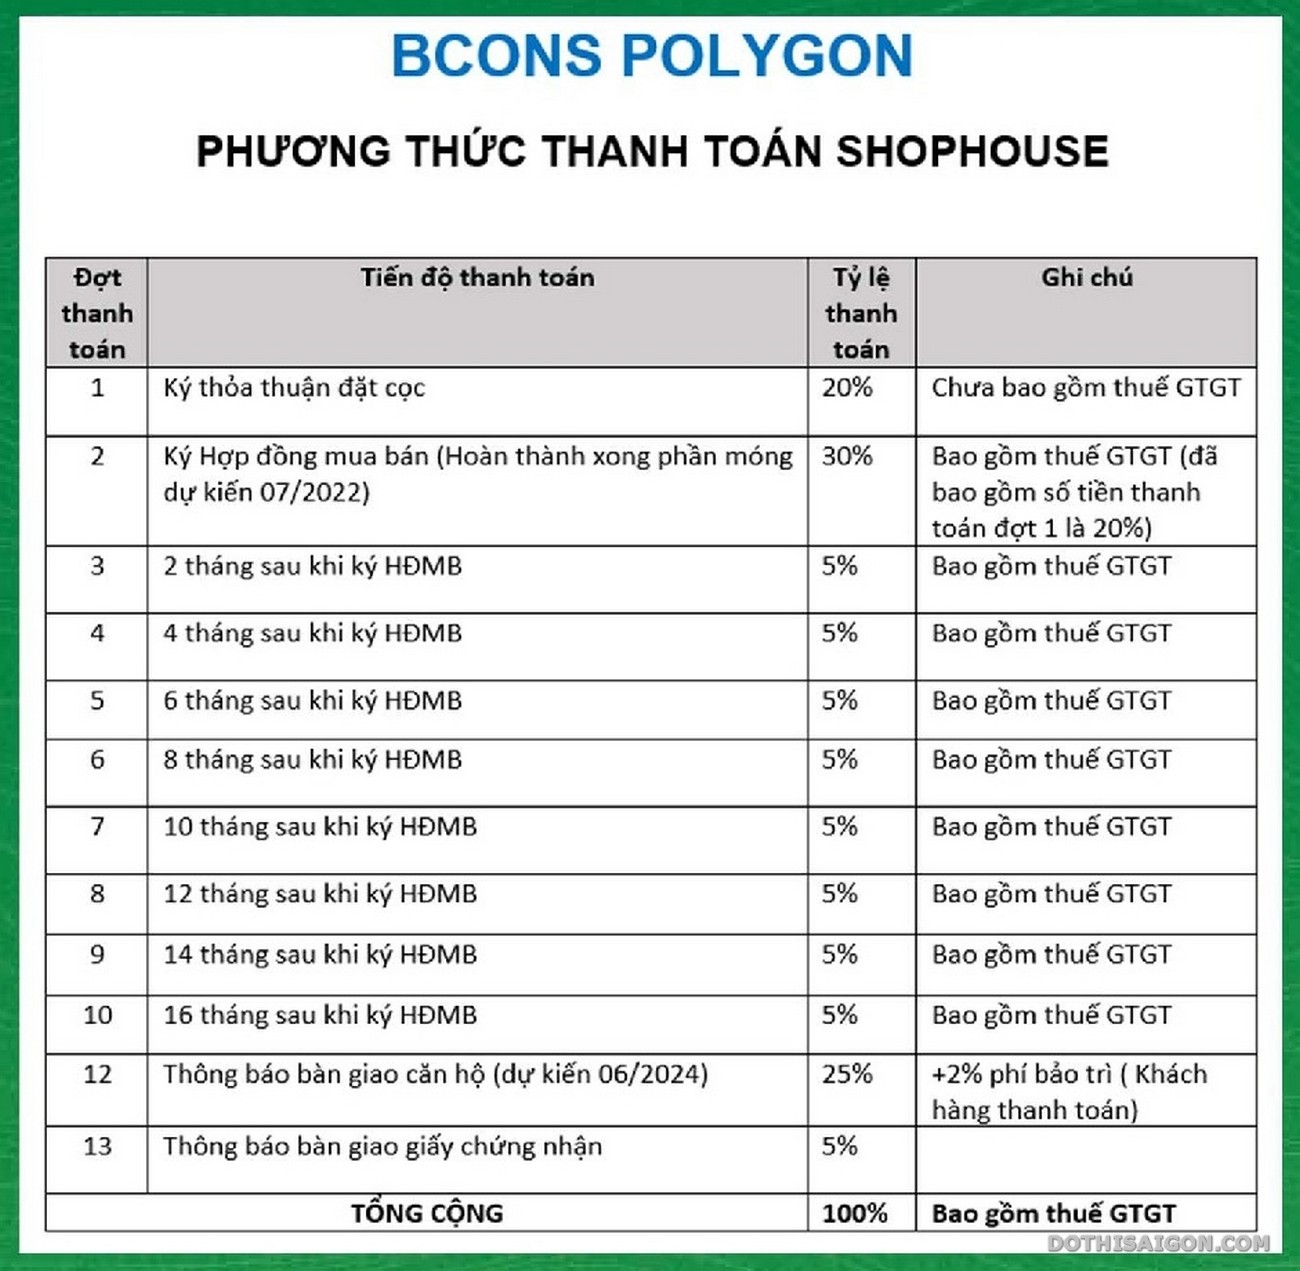 Phương thức thanh toán dự án Bcons Polygon Dĩ An